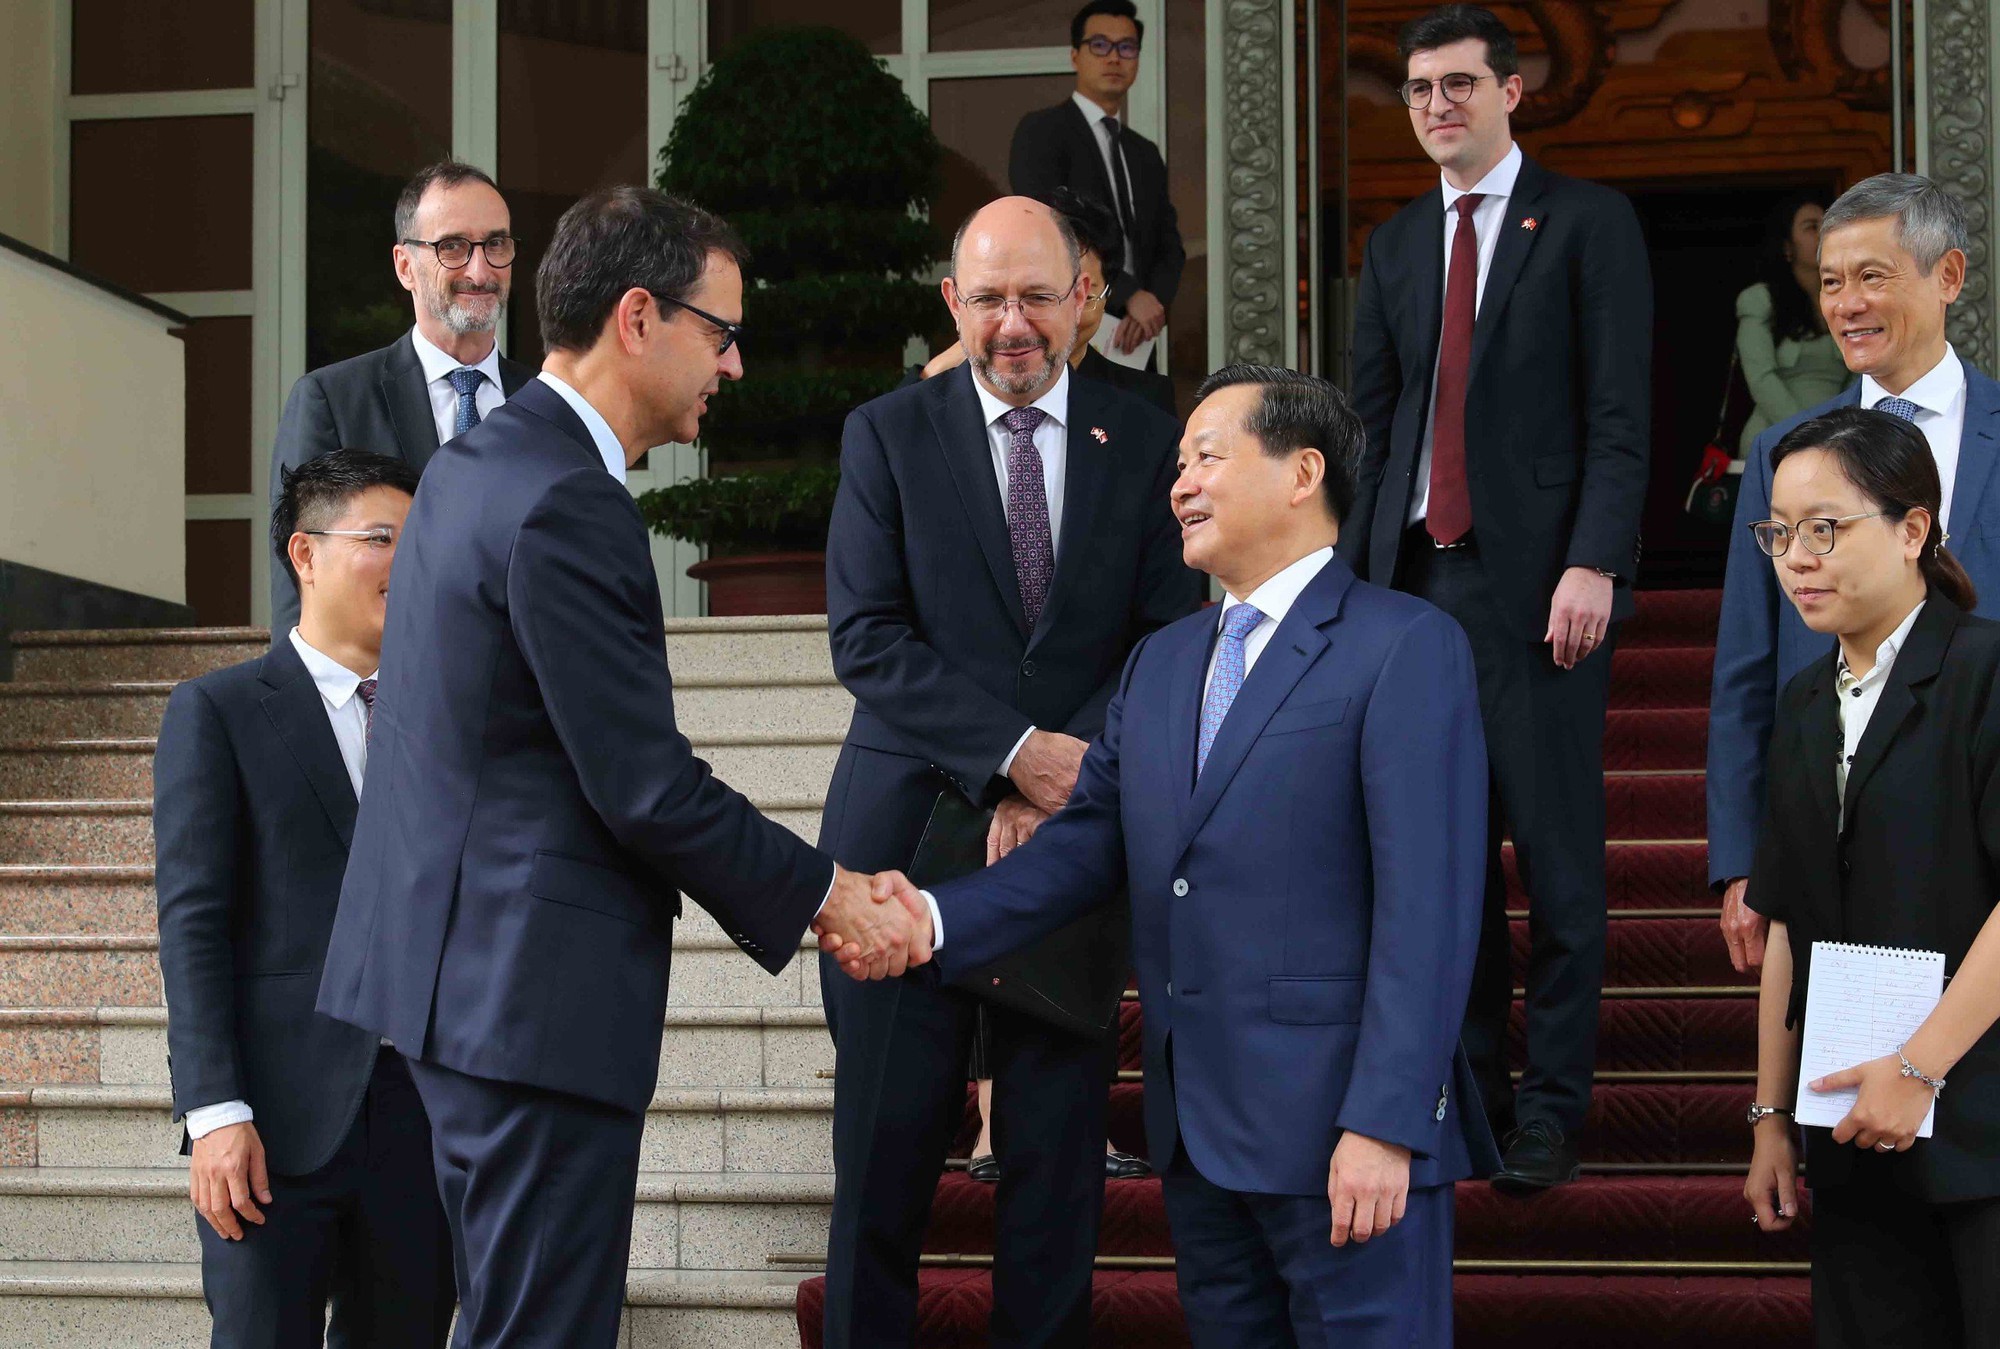 Phó Thủ tướng Lê Minh Khái mong muốn quan hệ hai nước Việt Nam - Thụy Sĩ ngày càng tốt hơn nữa, sâu rộng hơn nữa, cùng nhau vượt qua những khó khăn, thách thức chung để cùng phát triển bền vững mang lại sự thịnh vượng, hạnh phúc cho nhân dân mỗi nước. Ảnh VGP